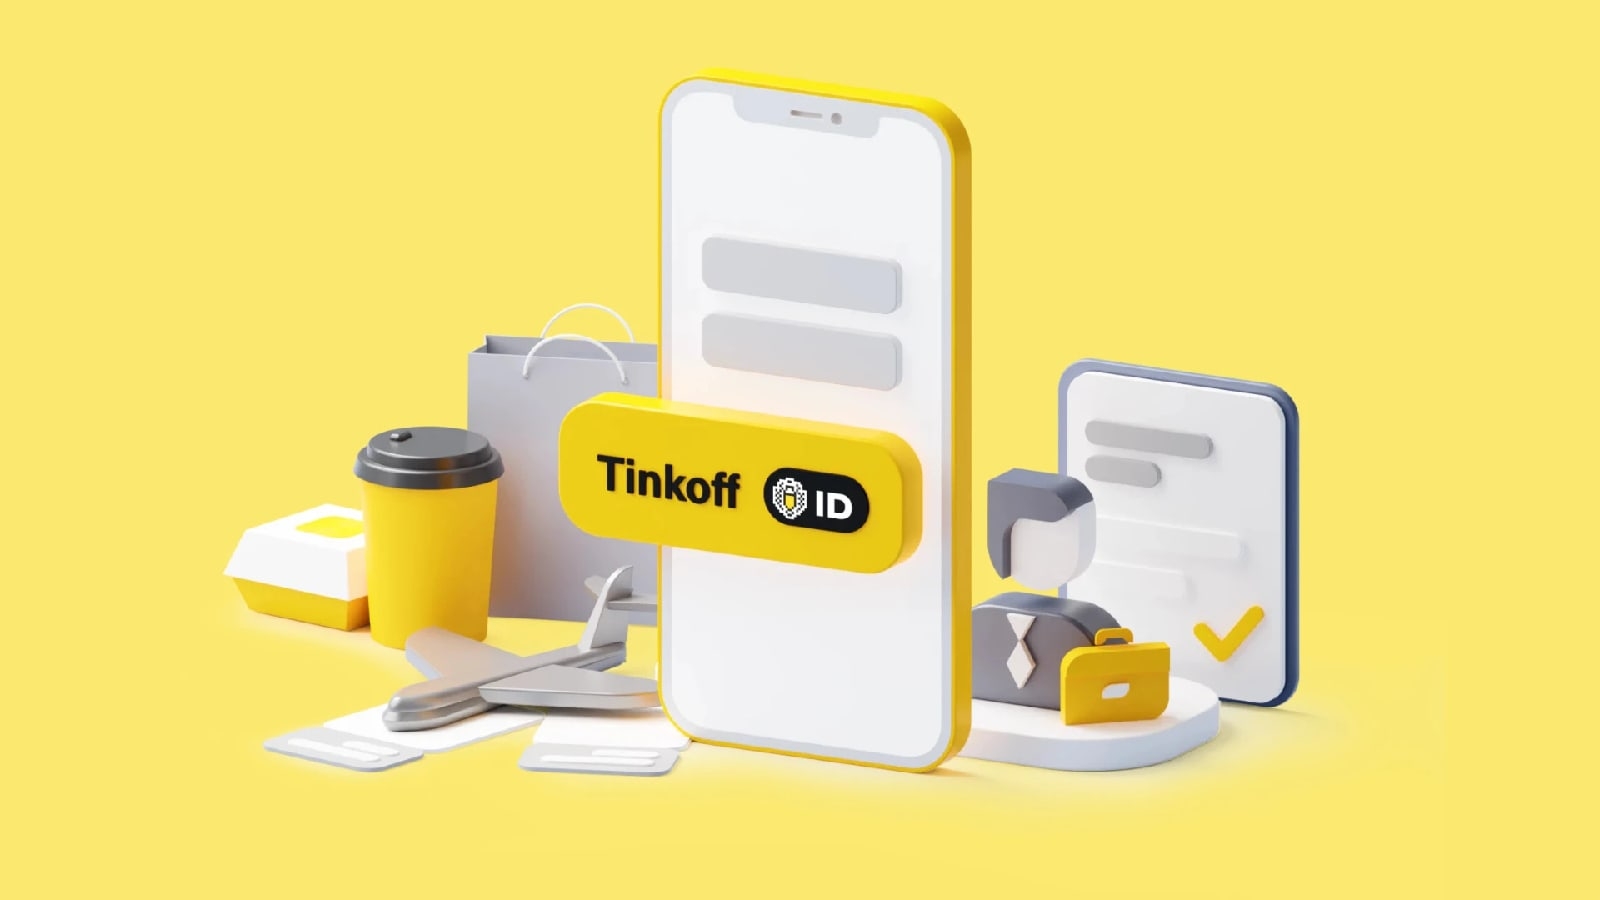 «Тинькофф» представил сервис для удобной авторизации в приложениях и на сайтах собственных и партнёрских продуктов - Tinkoff ID. 